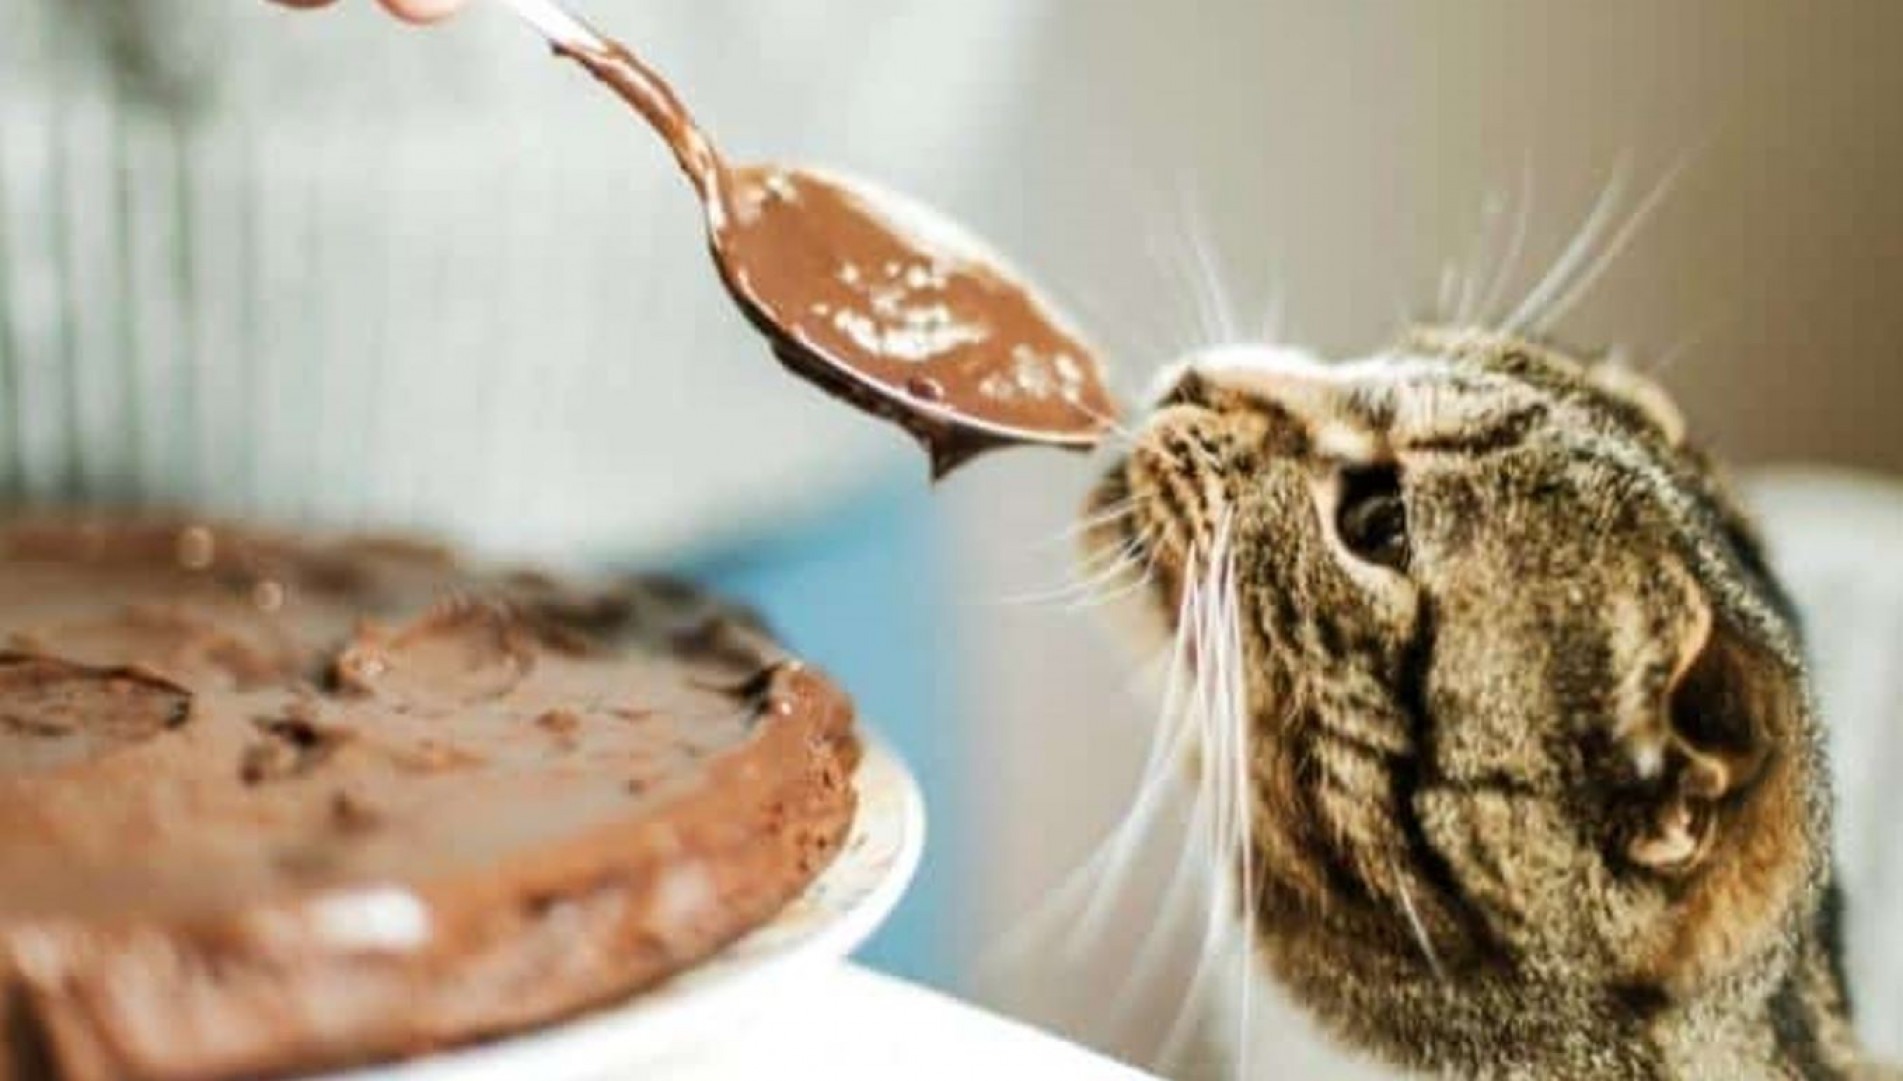 Apesar de não sentirem o gosto doce, felinos podem querer chocolate por conta do leite em sua composição.